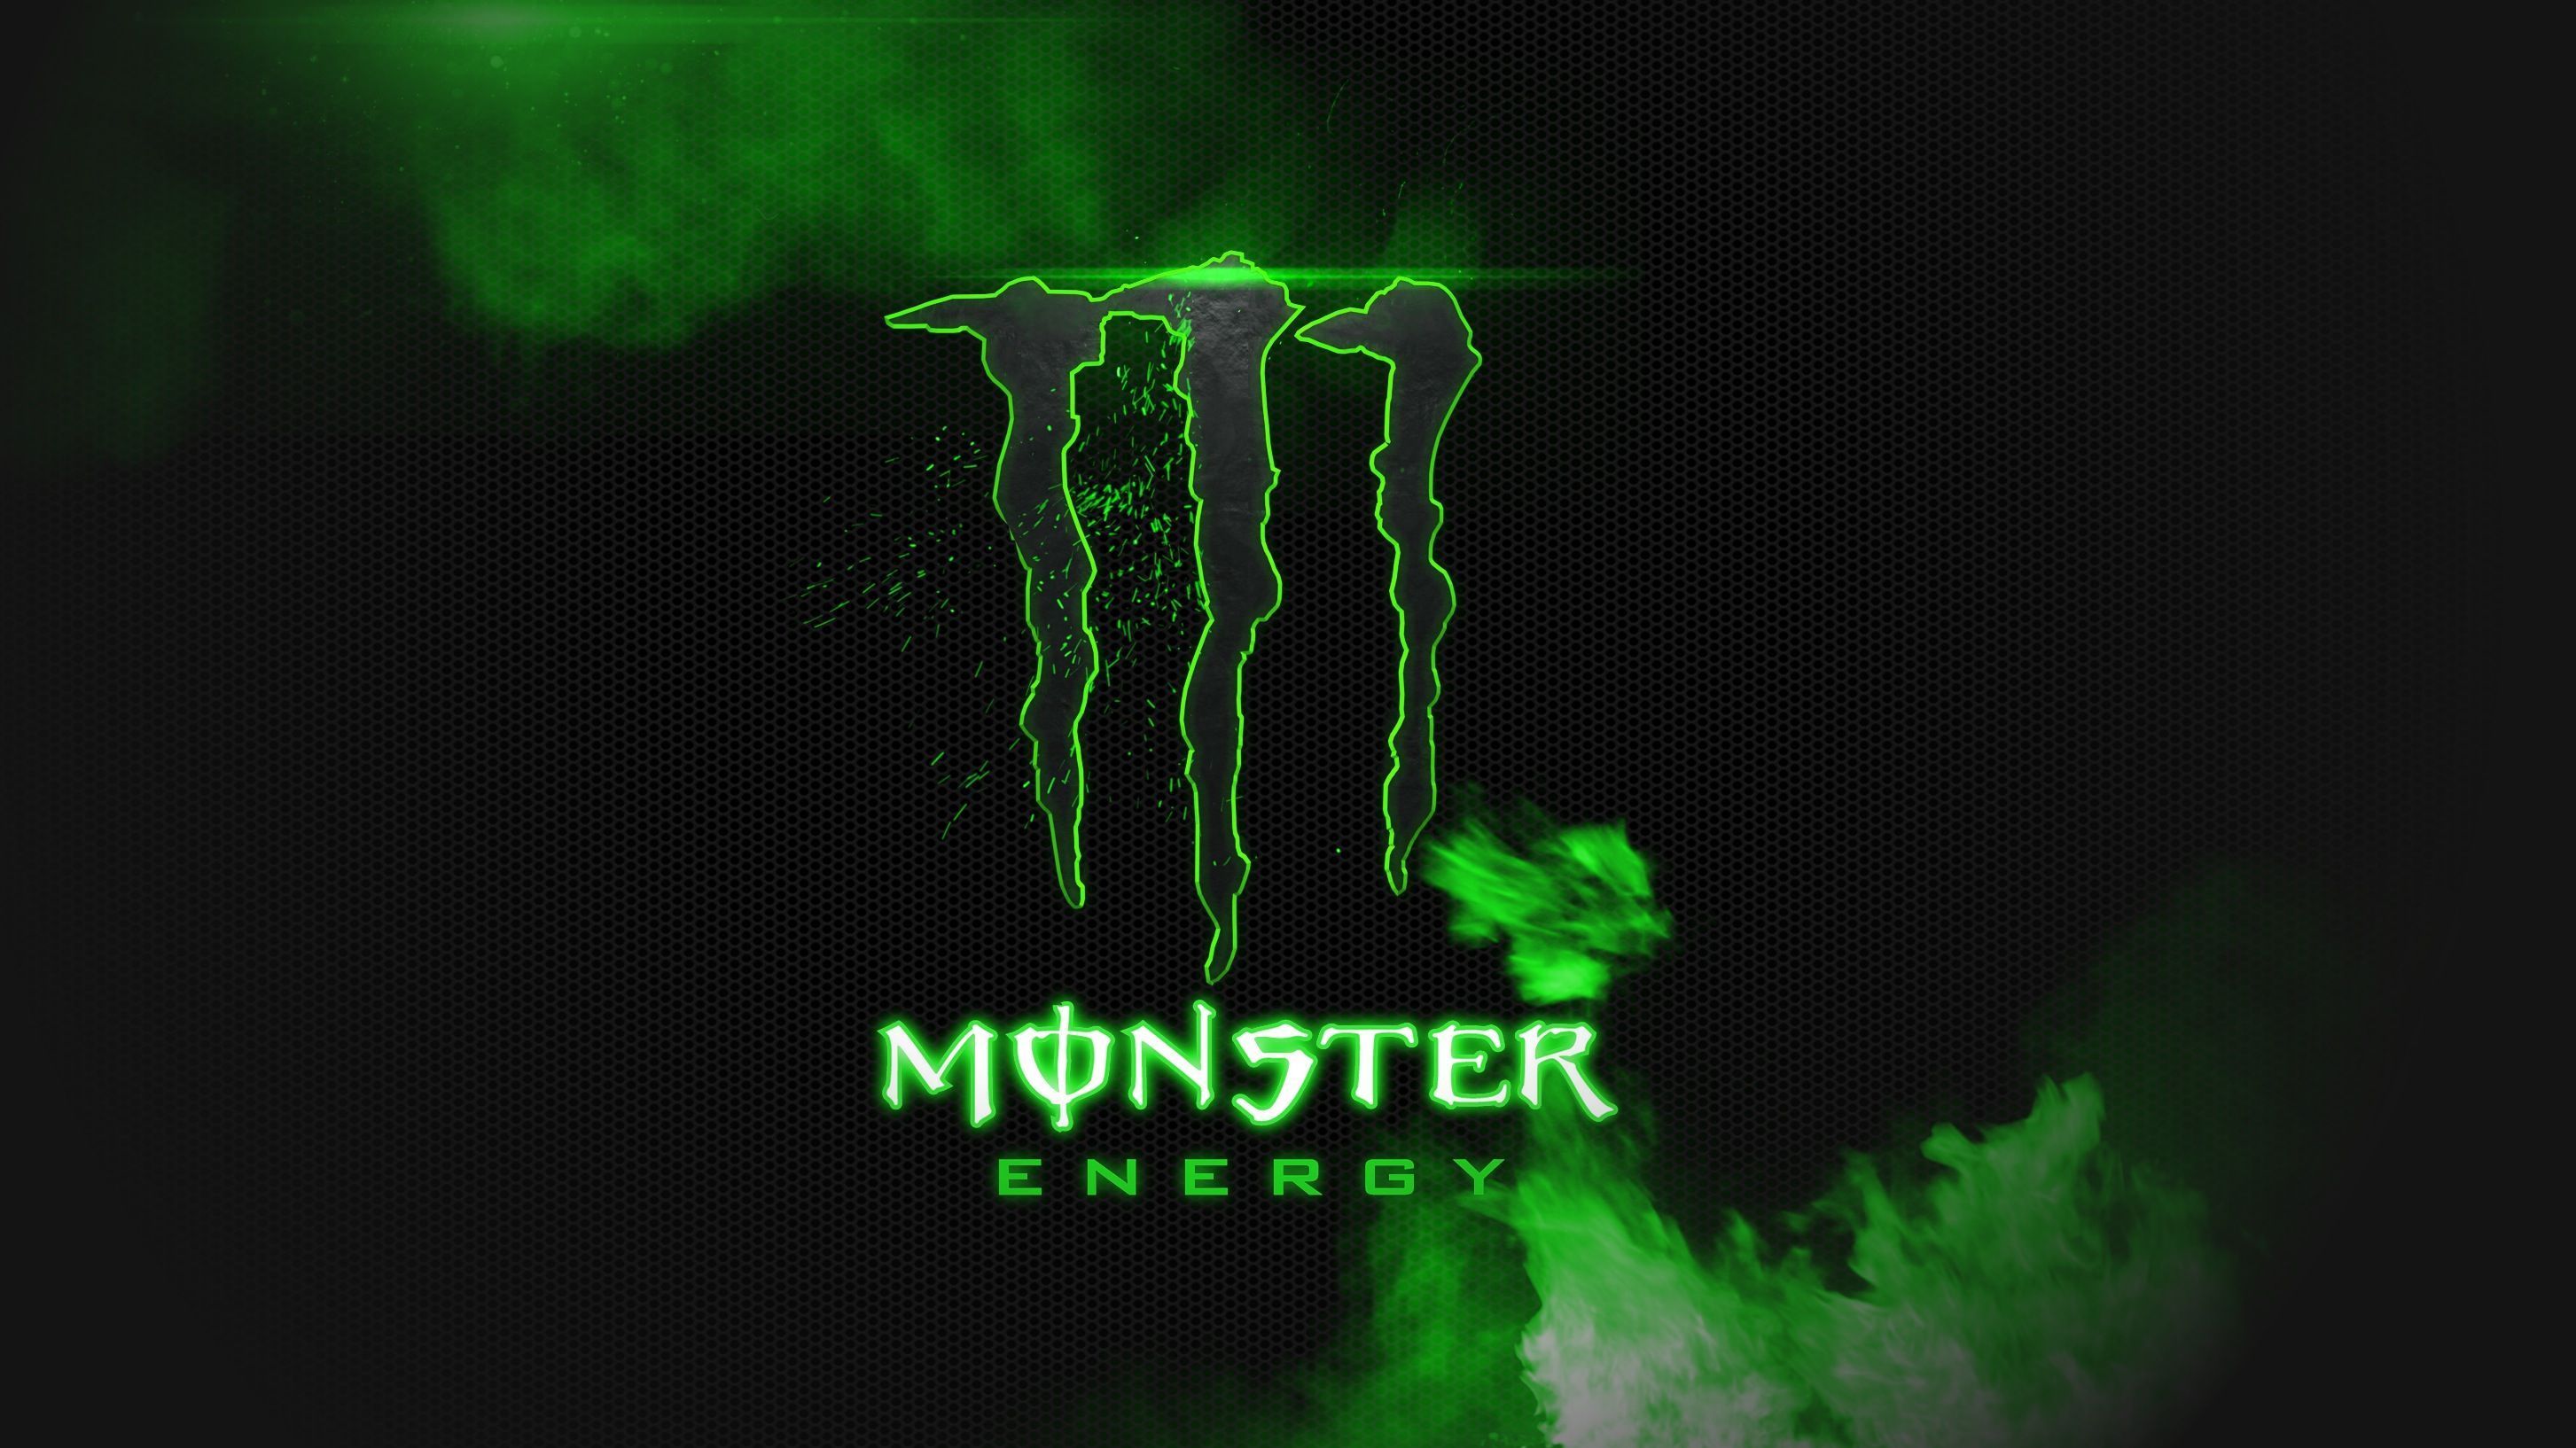 Monster Energy Desktop Wallpaper, Monster Energy Backgrounds, New ...